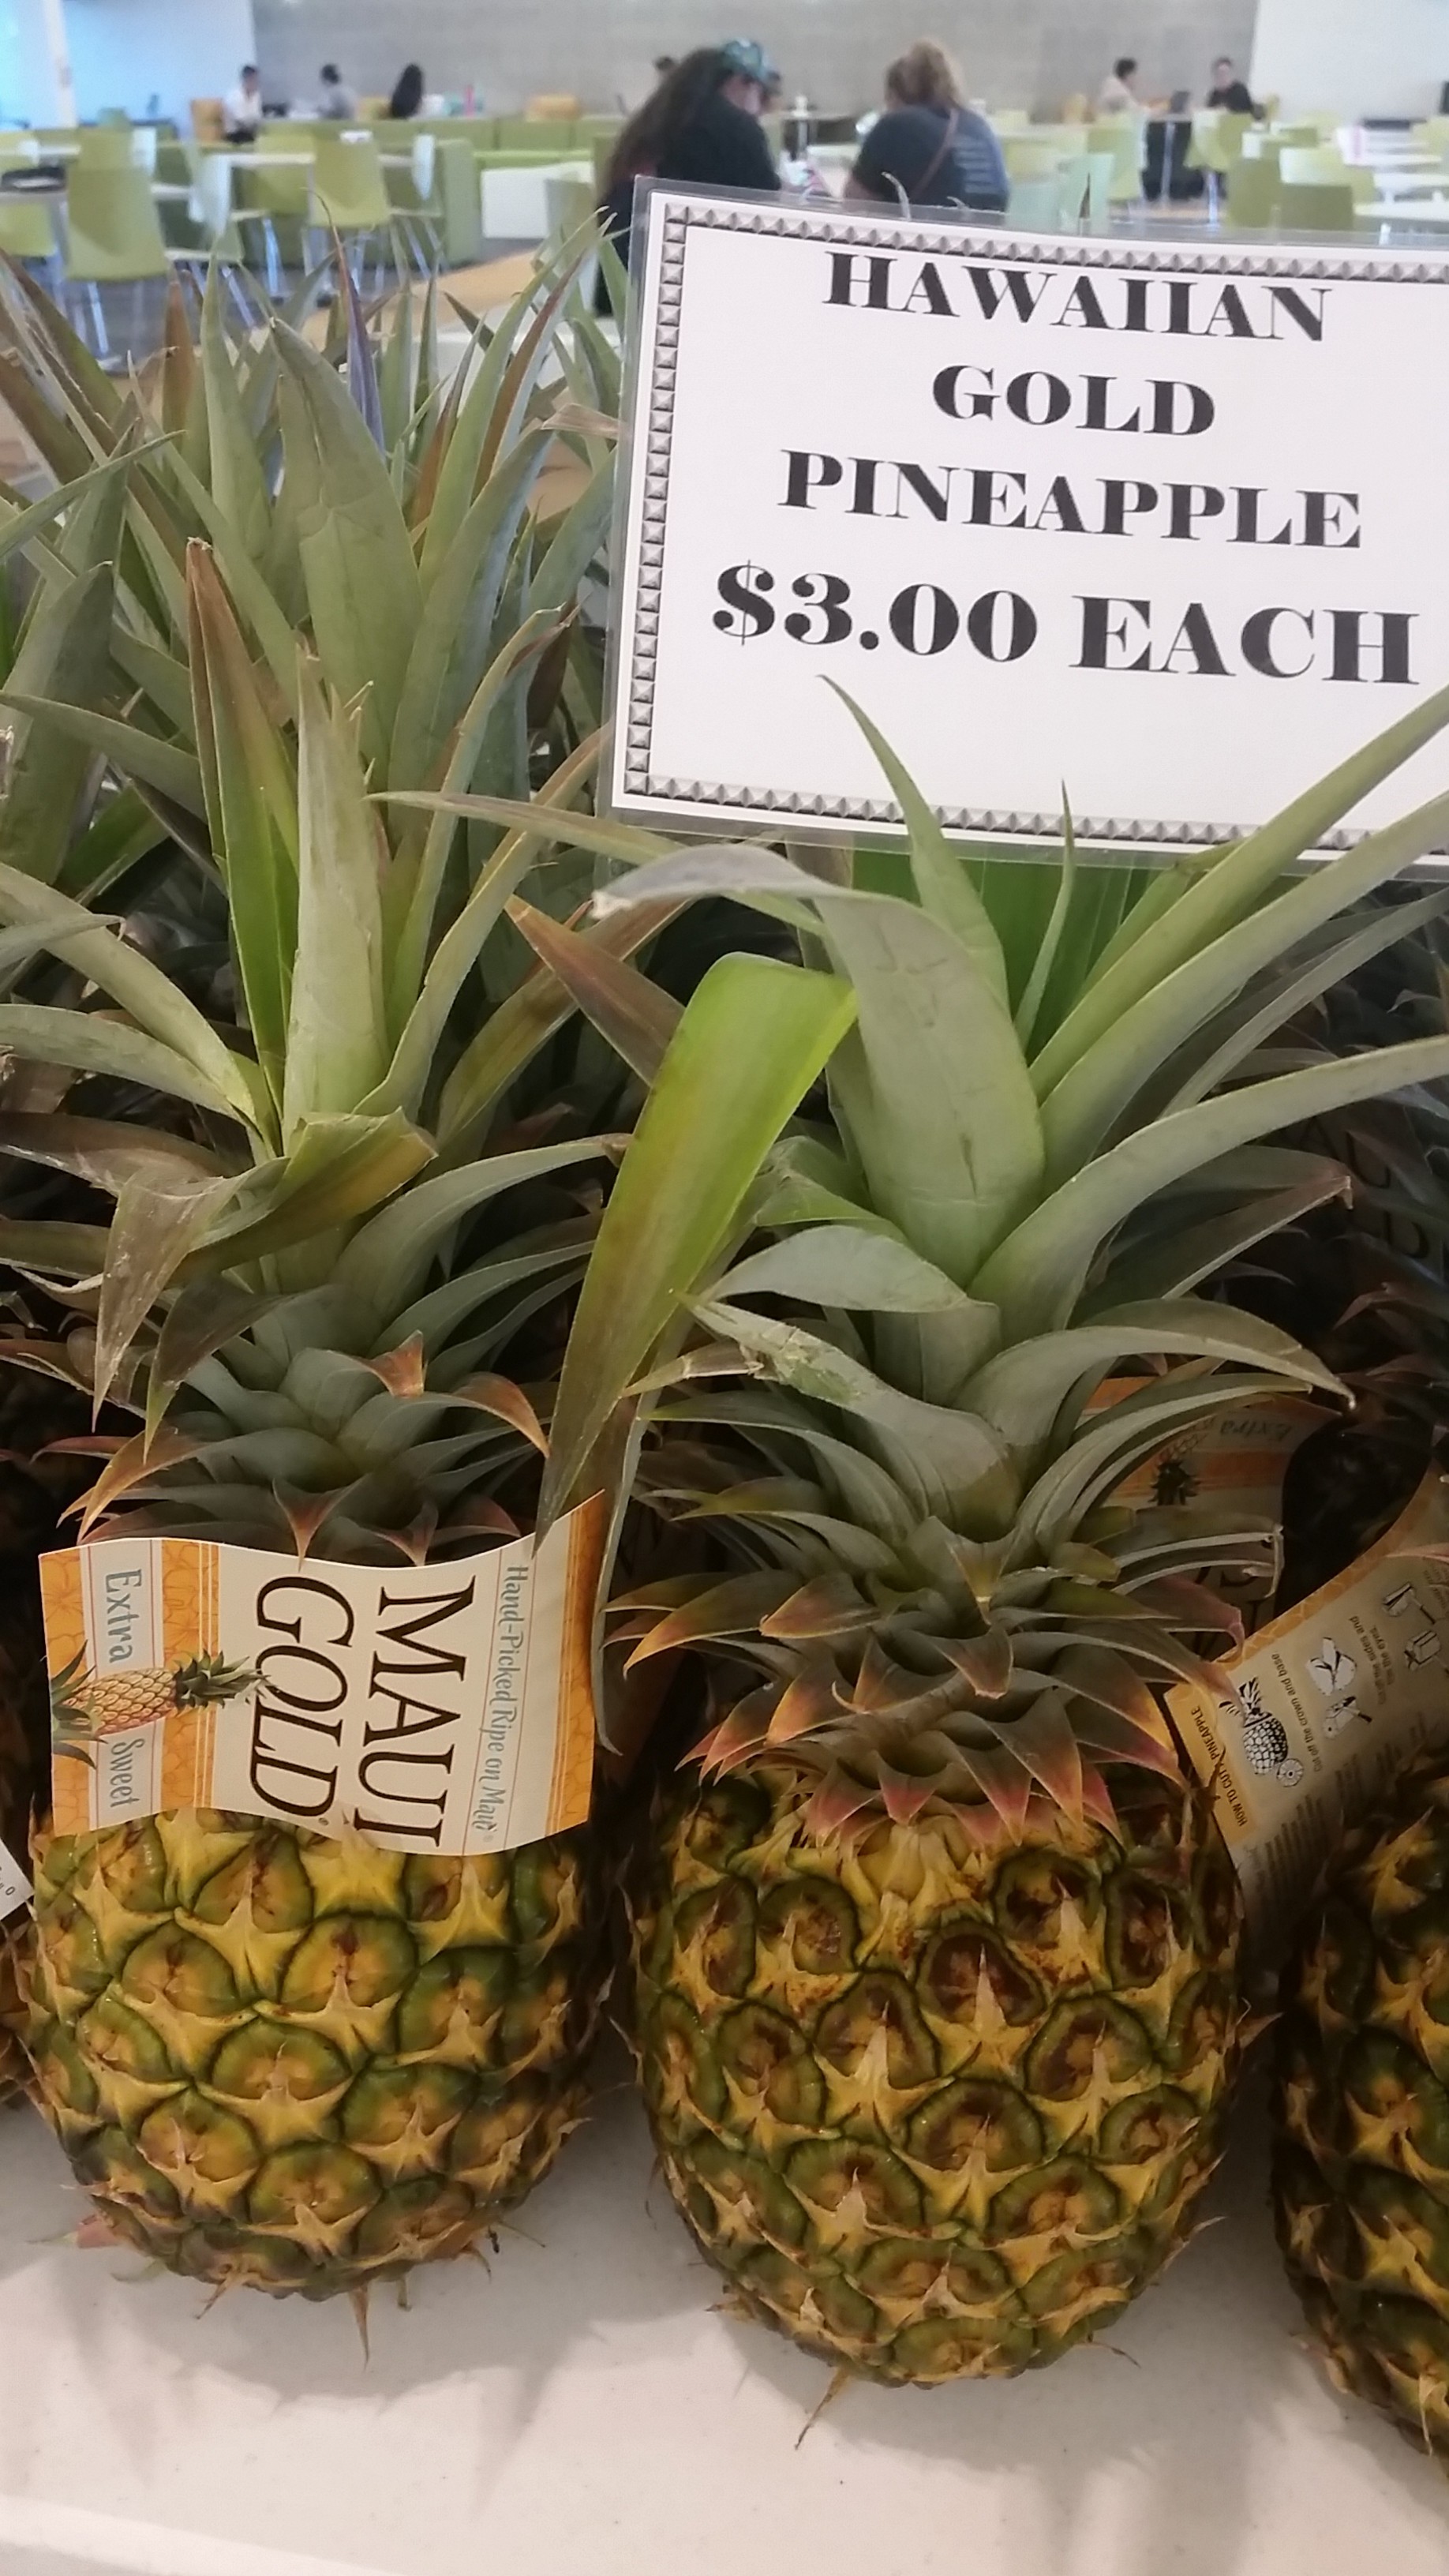 Farmers' Market pineapple